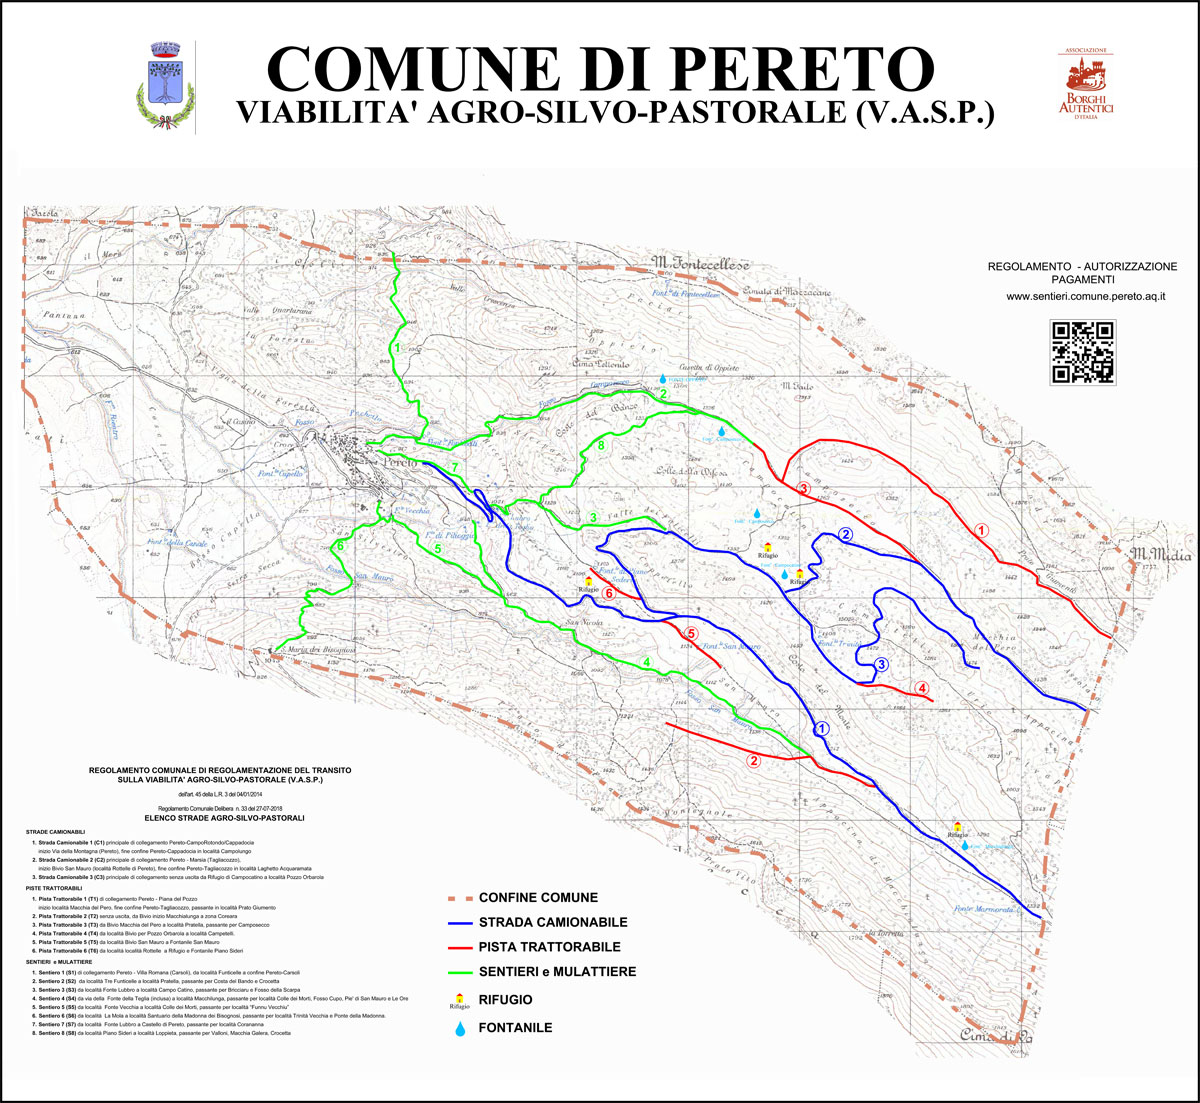 Mappa VASP - Comune di Pereto (AQ)